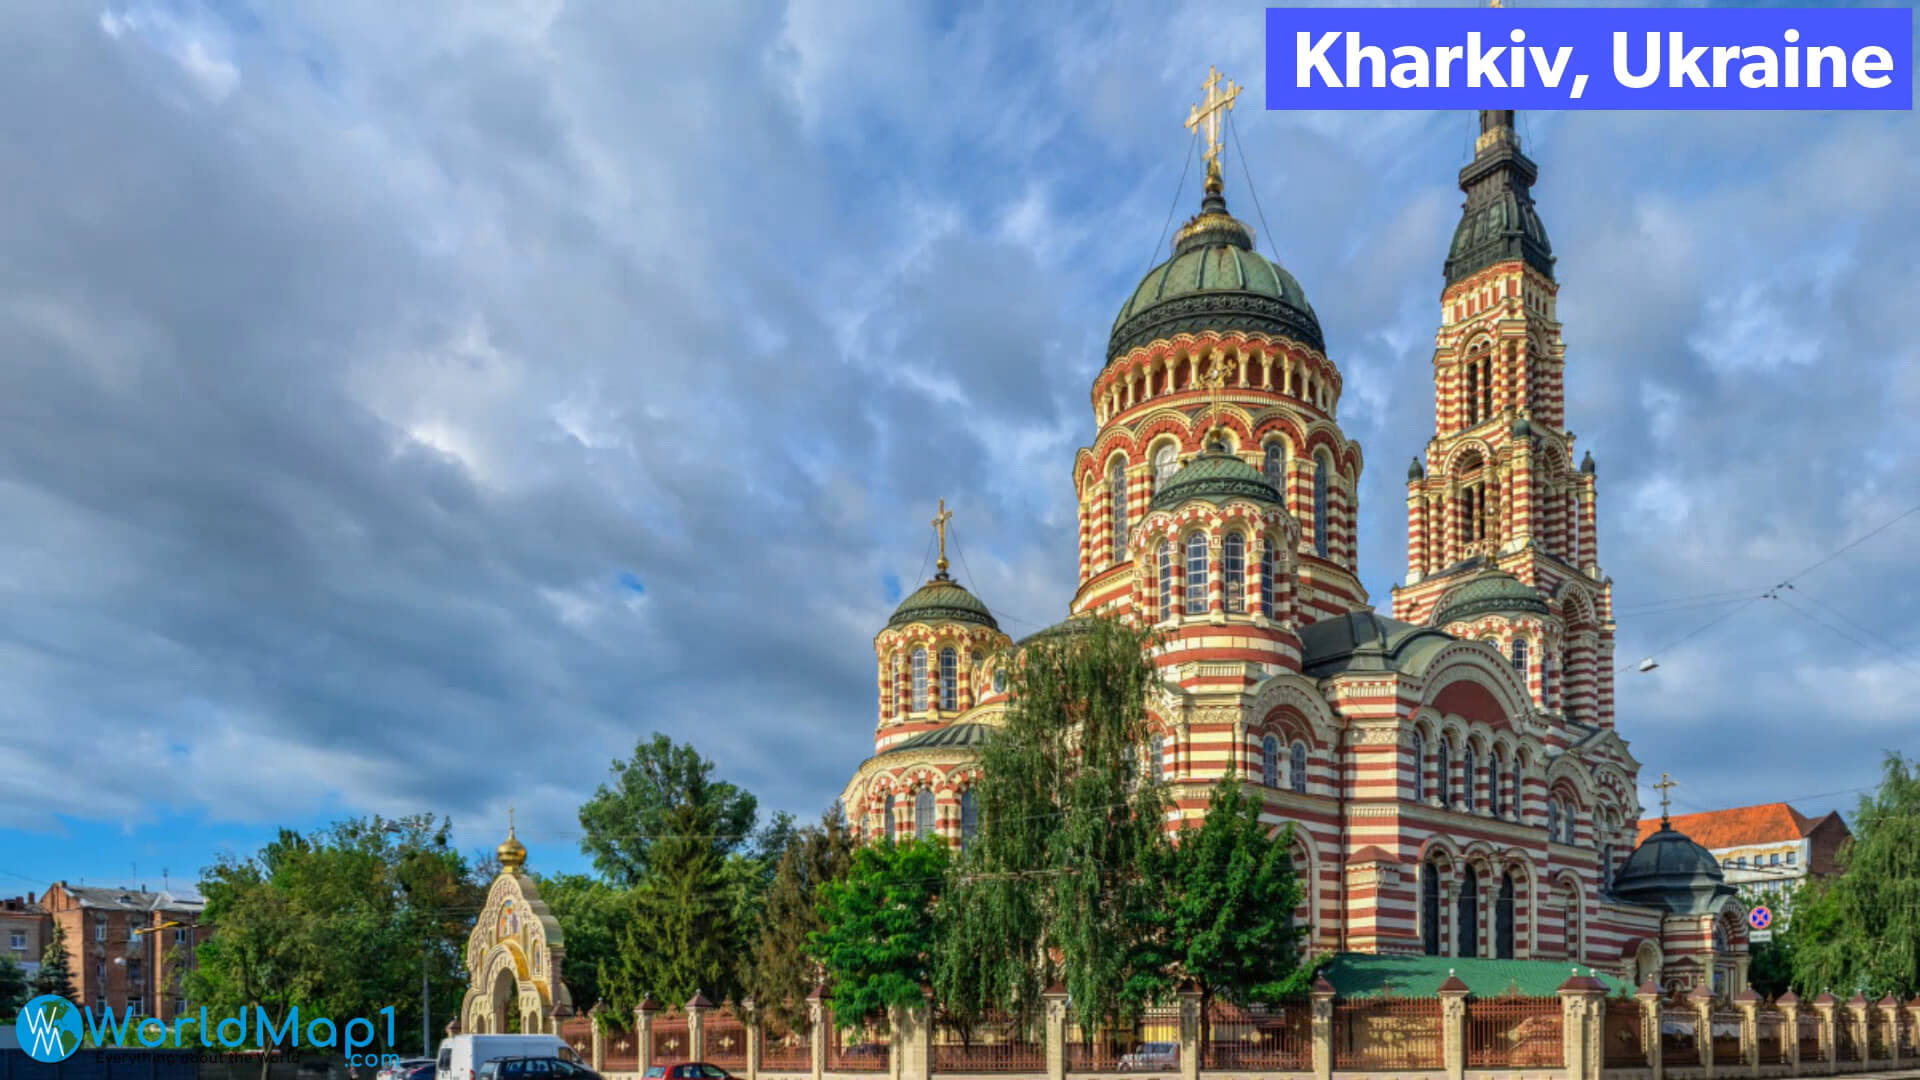 Kharkiv in Ukraine